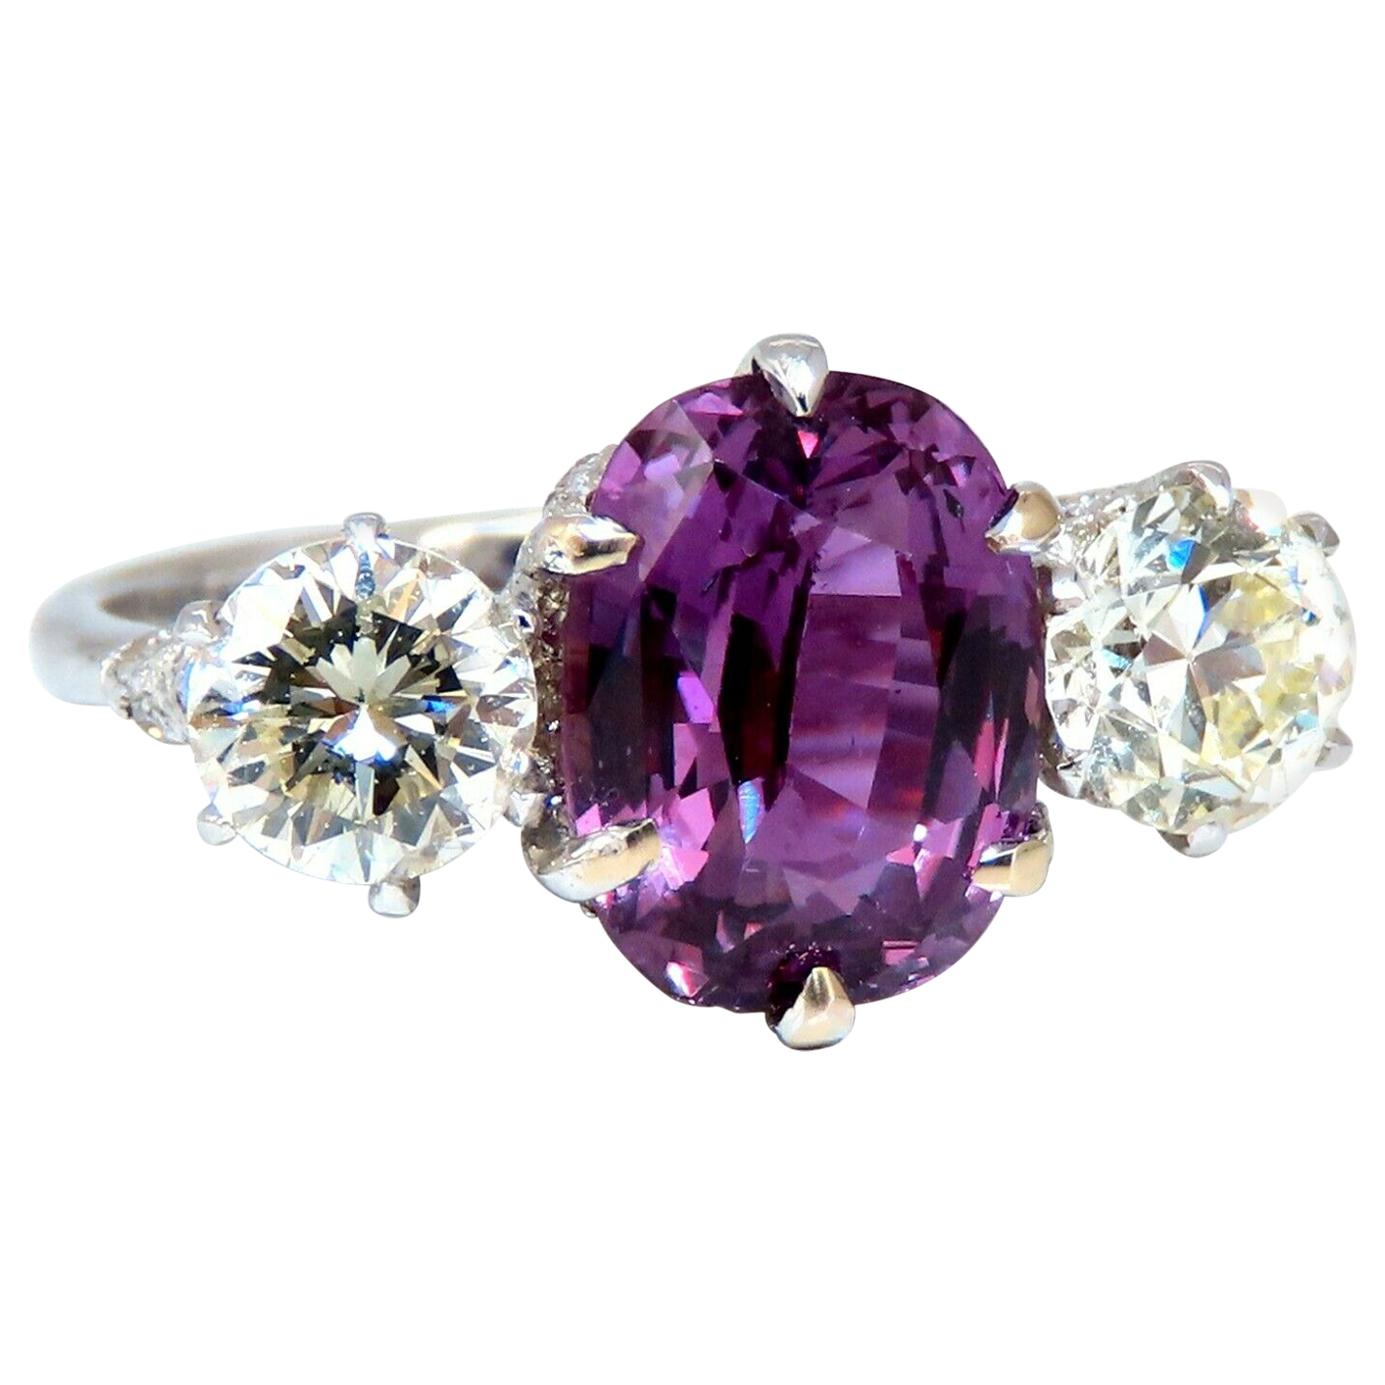 Bague classique en or 18 carats avec diamants et saphir rose violet naturel de 3,37 carats certifié par le GIA